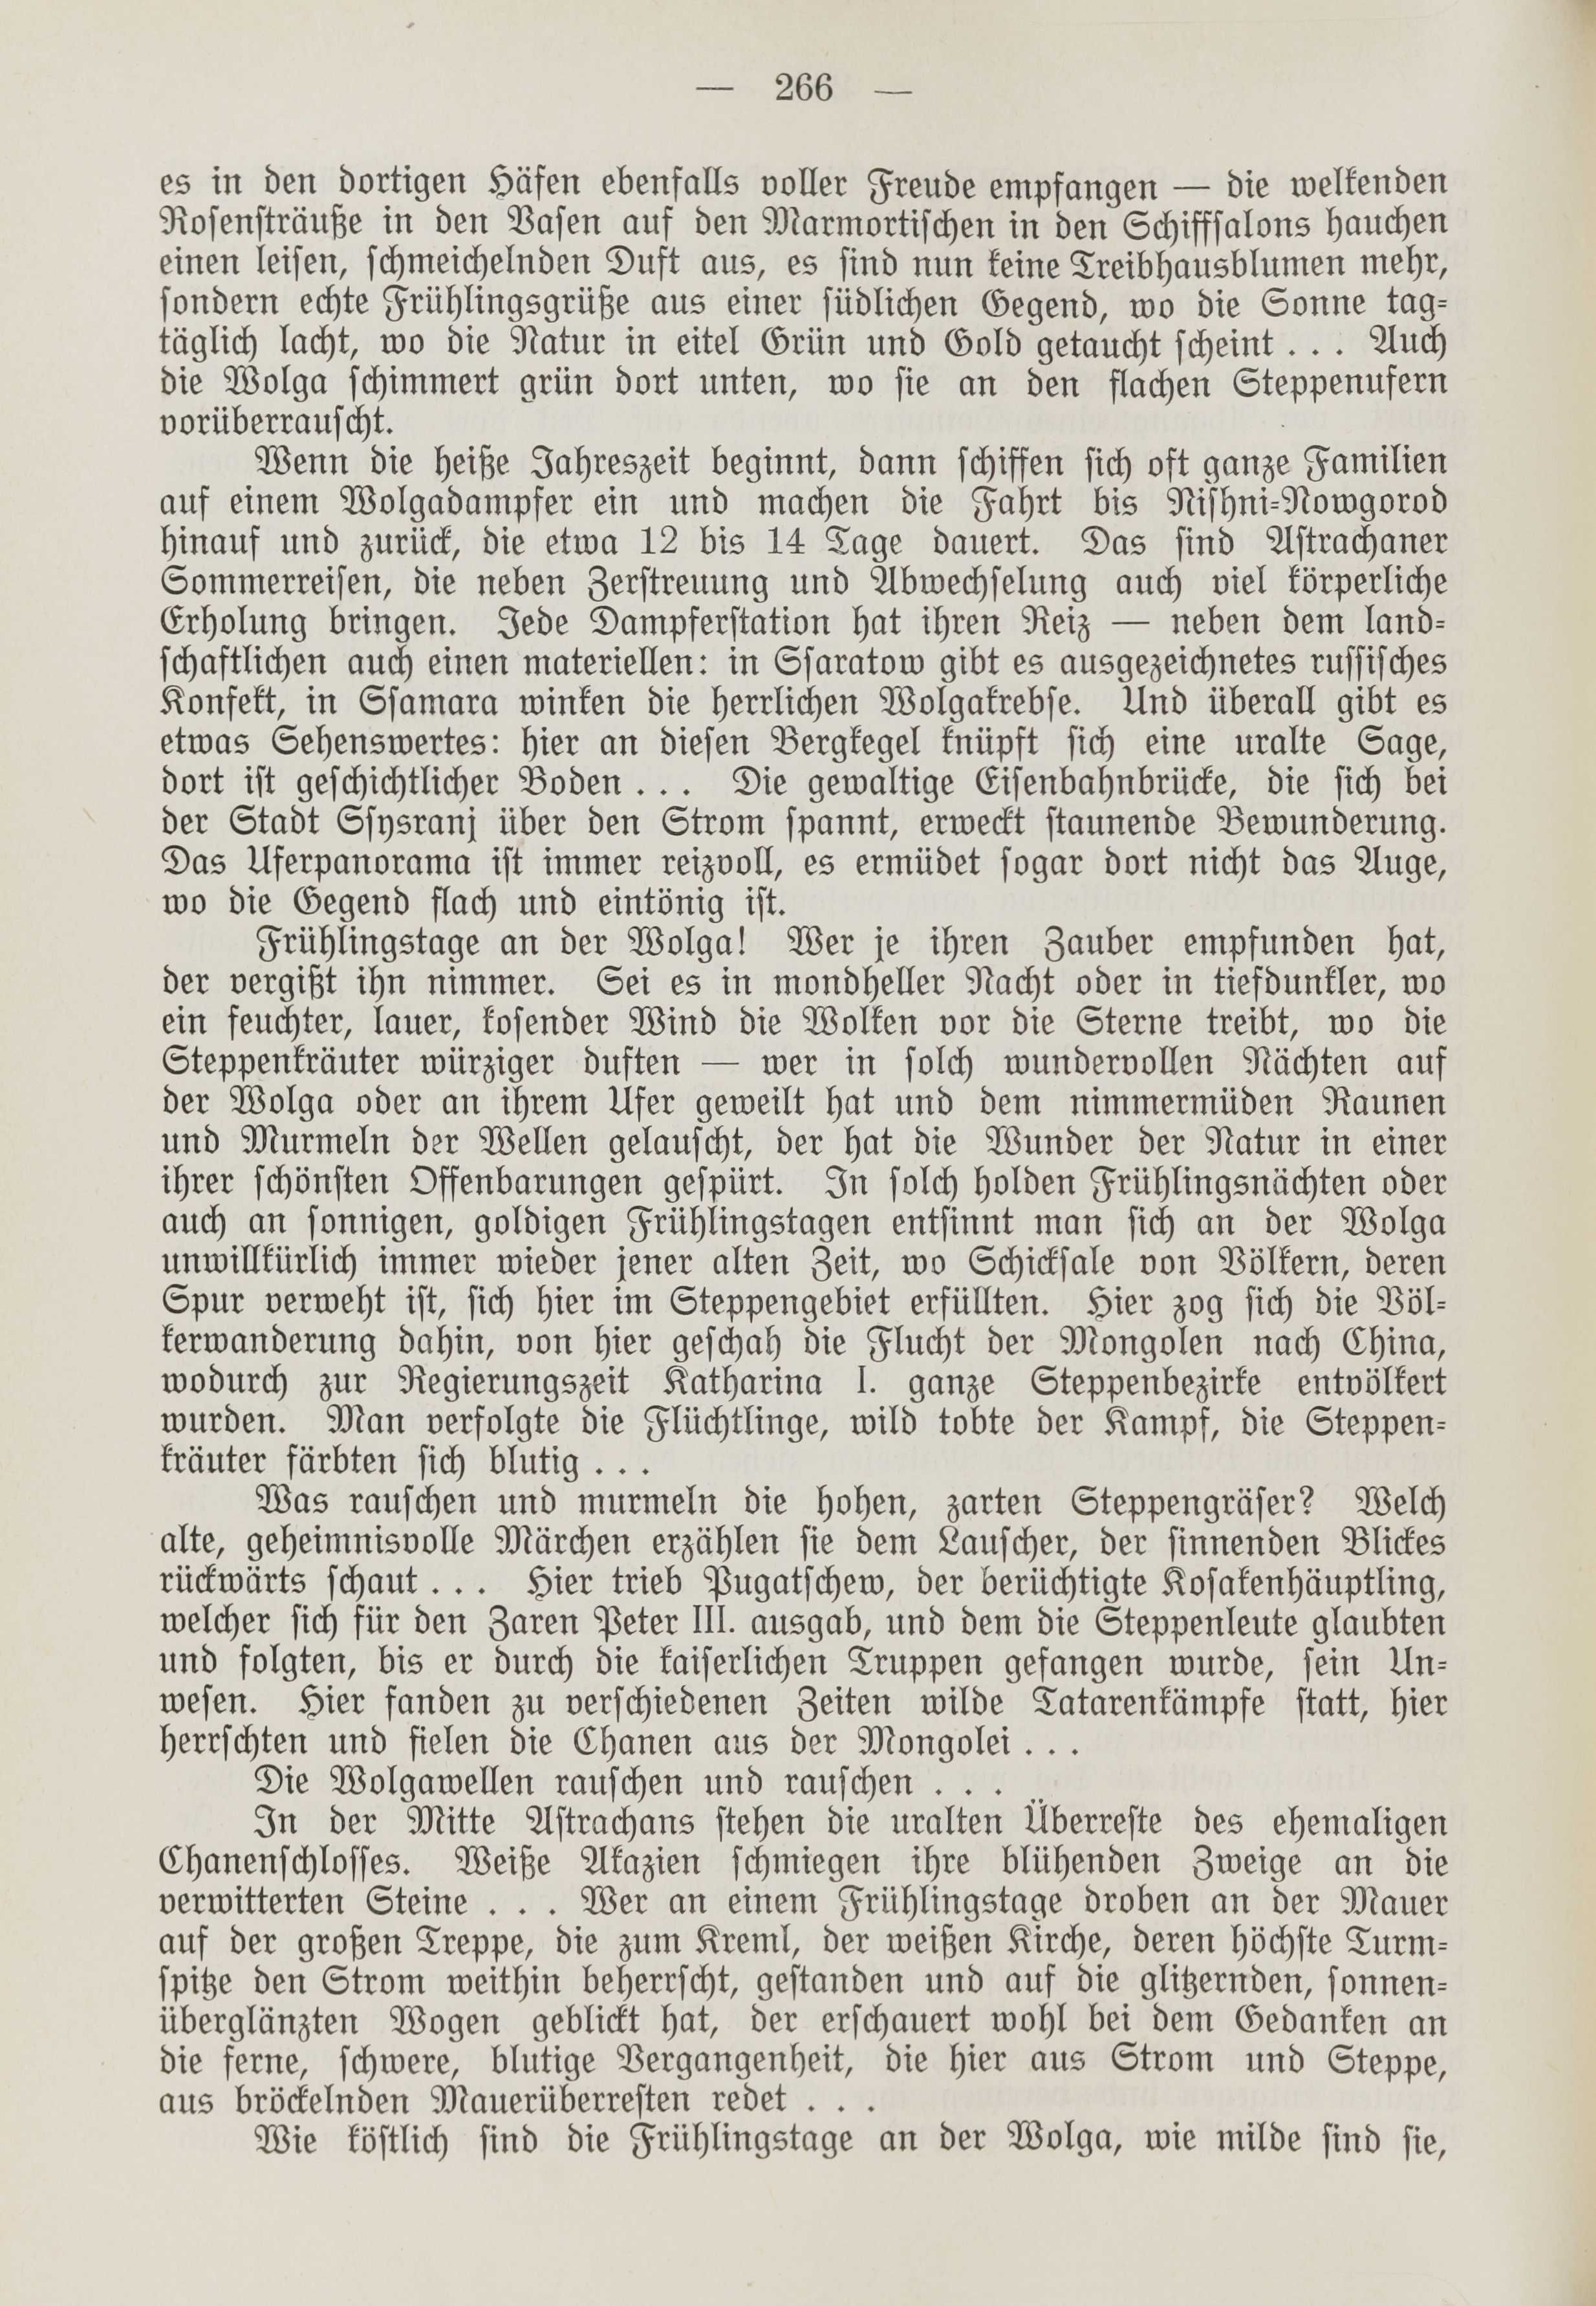 Deutsche Monatsschrift für Russland [1] (1912) | 274. (266) Põhitekst